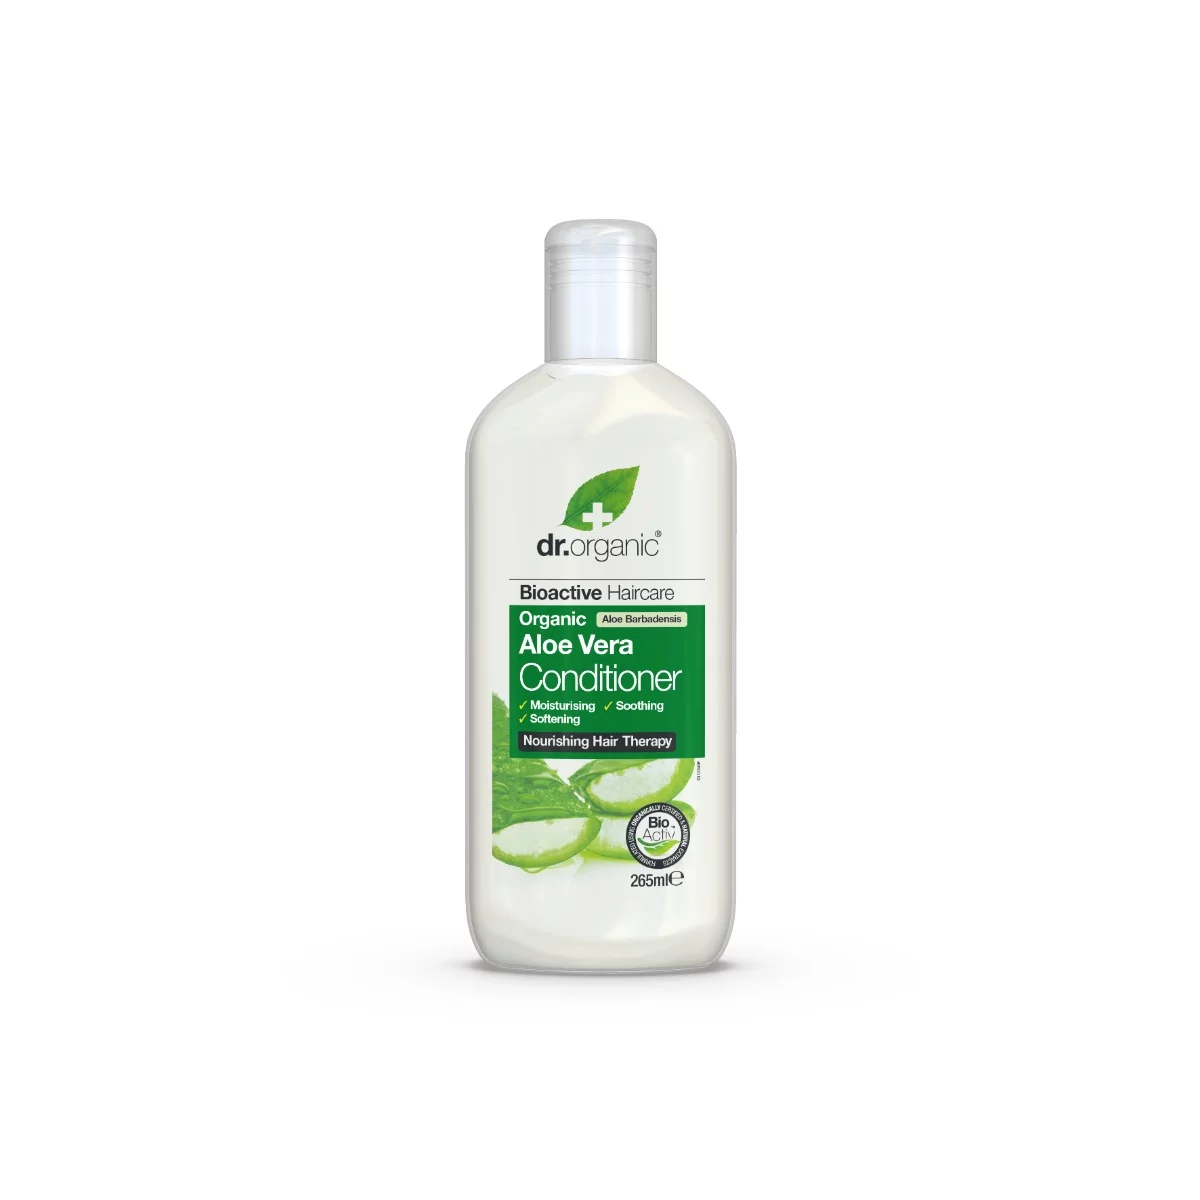 Dr. Organic Bioactive Haircare tápláló hajkondicionáló bioaktív aloe verával 265 ml